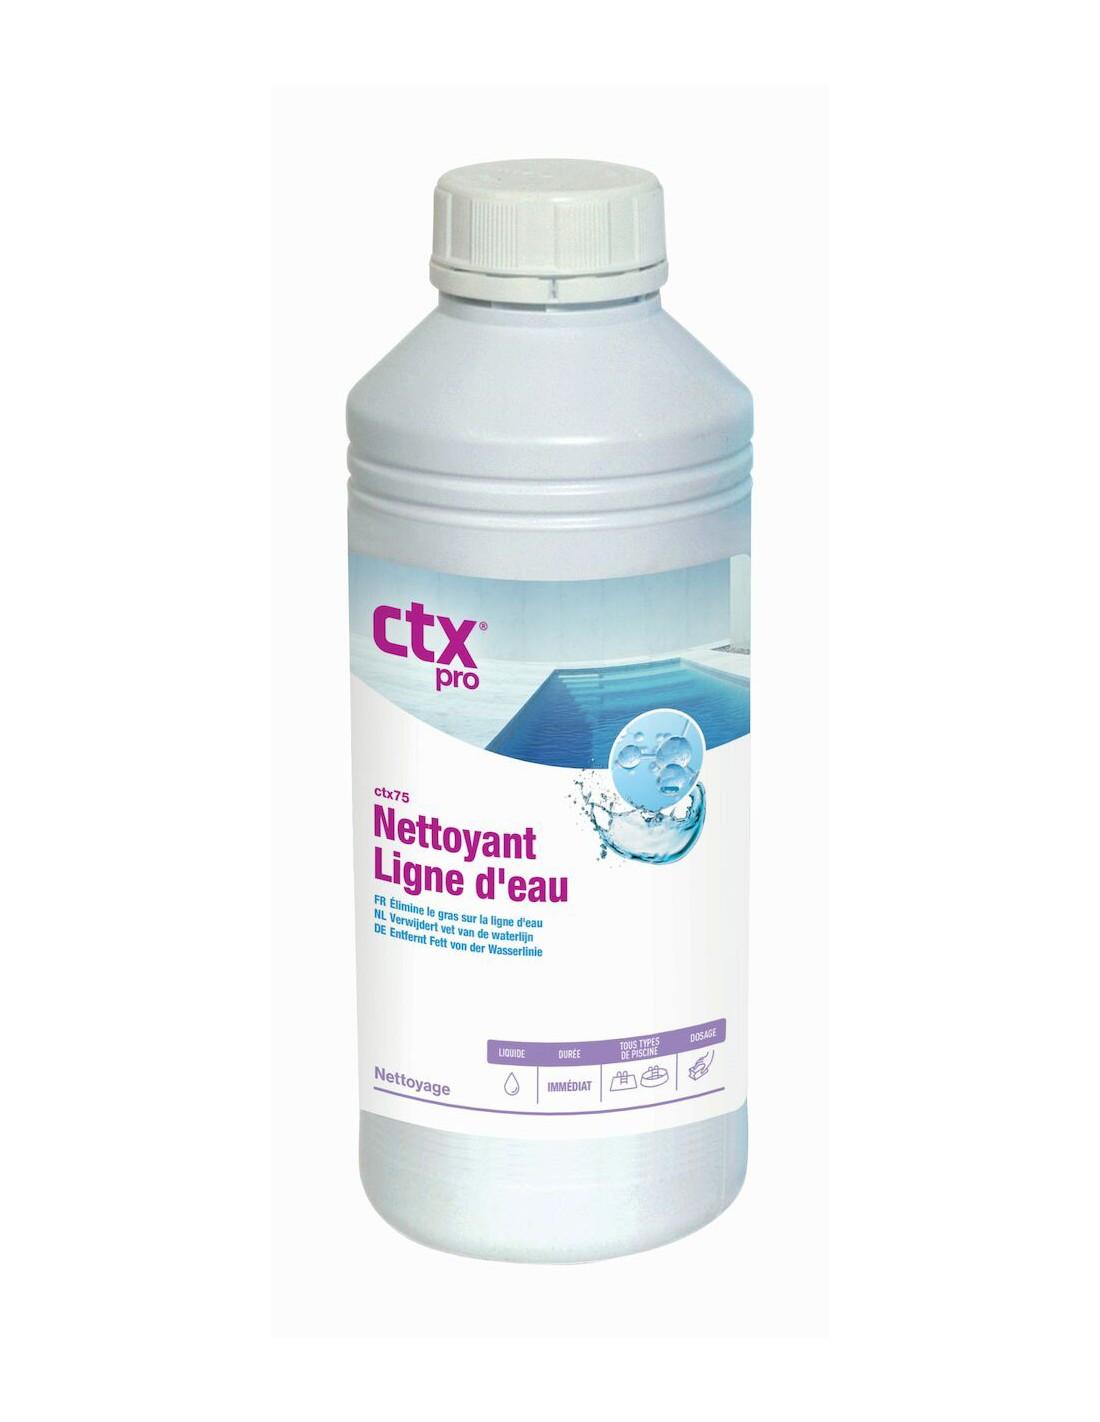 Nettoyant pour filtre - WELCLEAN Tab - boite de 8 pastilles - H2o